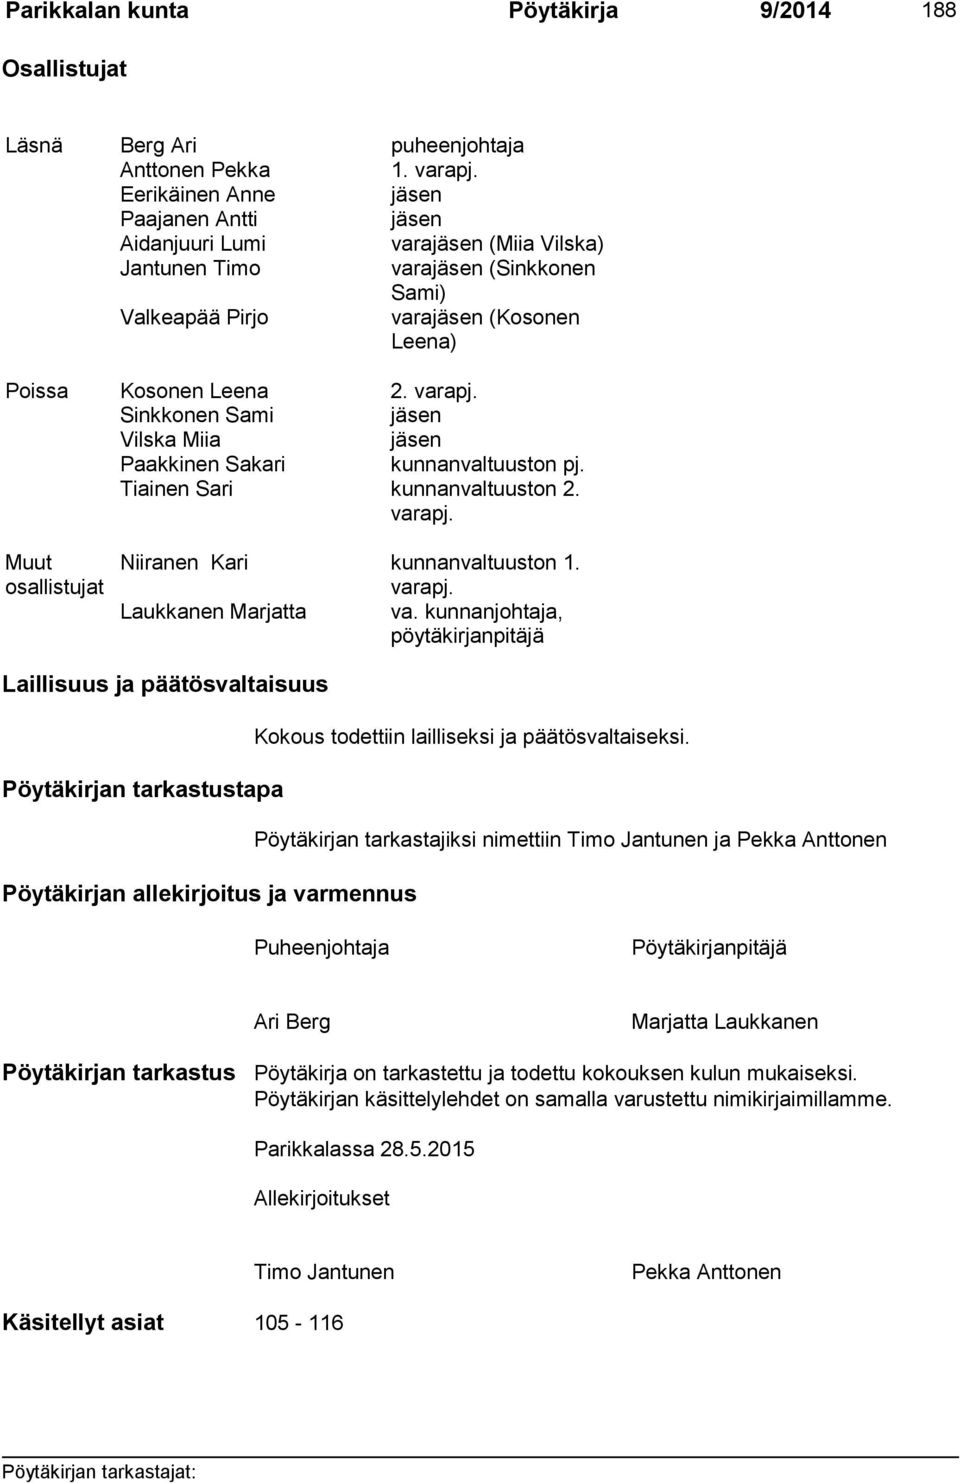 Sinkkonen Sami jäsen Vilska Miia jäsen Paakkinen Sakari kunnanvaltuuston pj. Tiainen Sari kunnanvaltuuston 2. varapj. Muut osallistujat Niiranen Kari kunnanvaltuuston 1. varapj. Laukkanen Marjatta va.